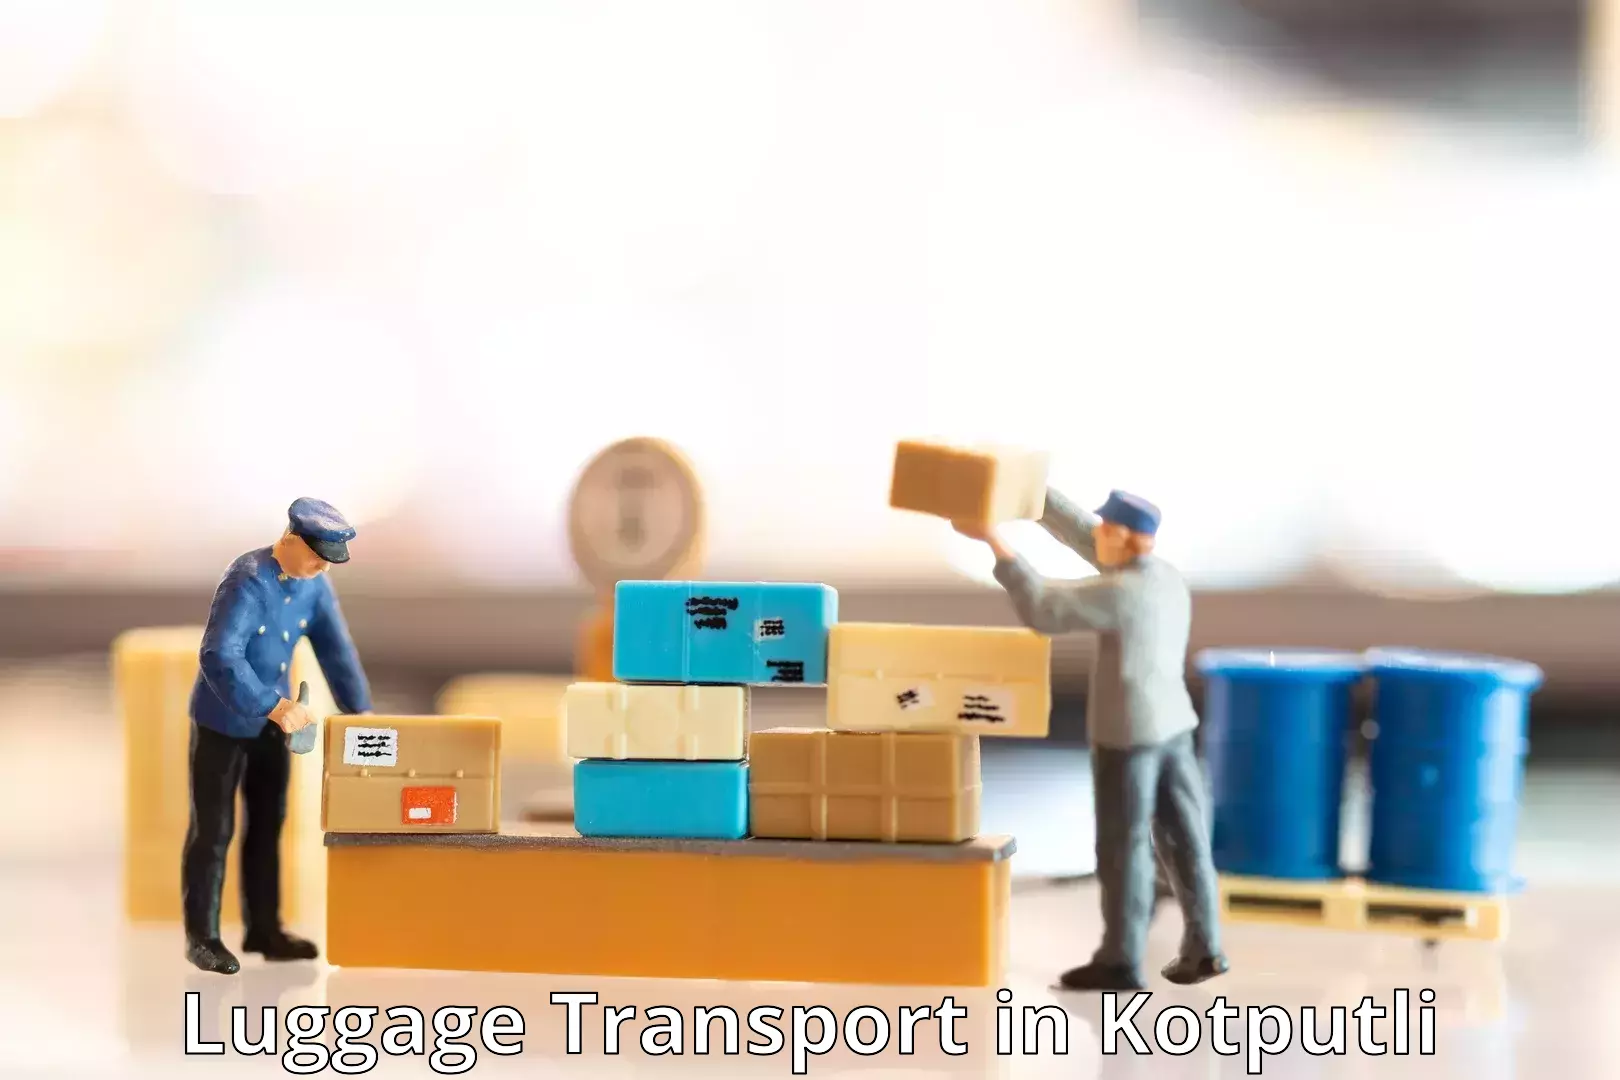 Affordable luggage shipping in Kotputli